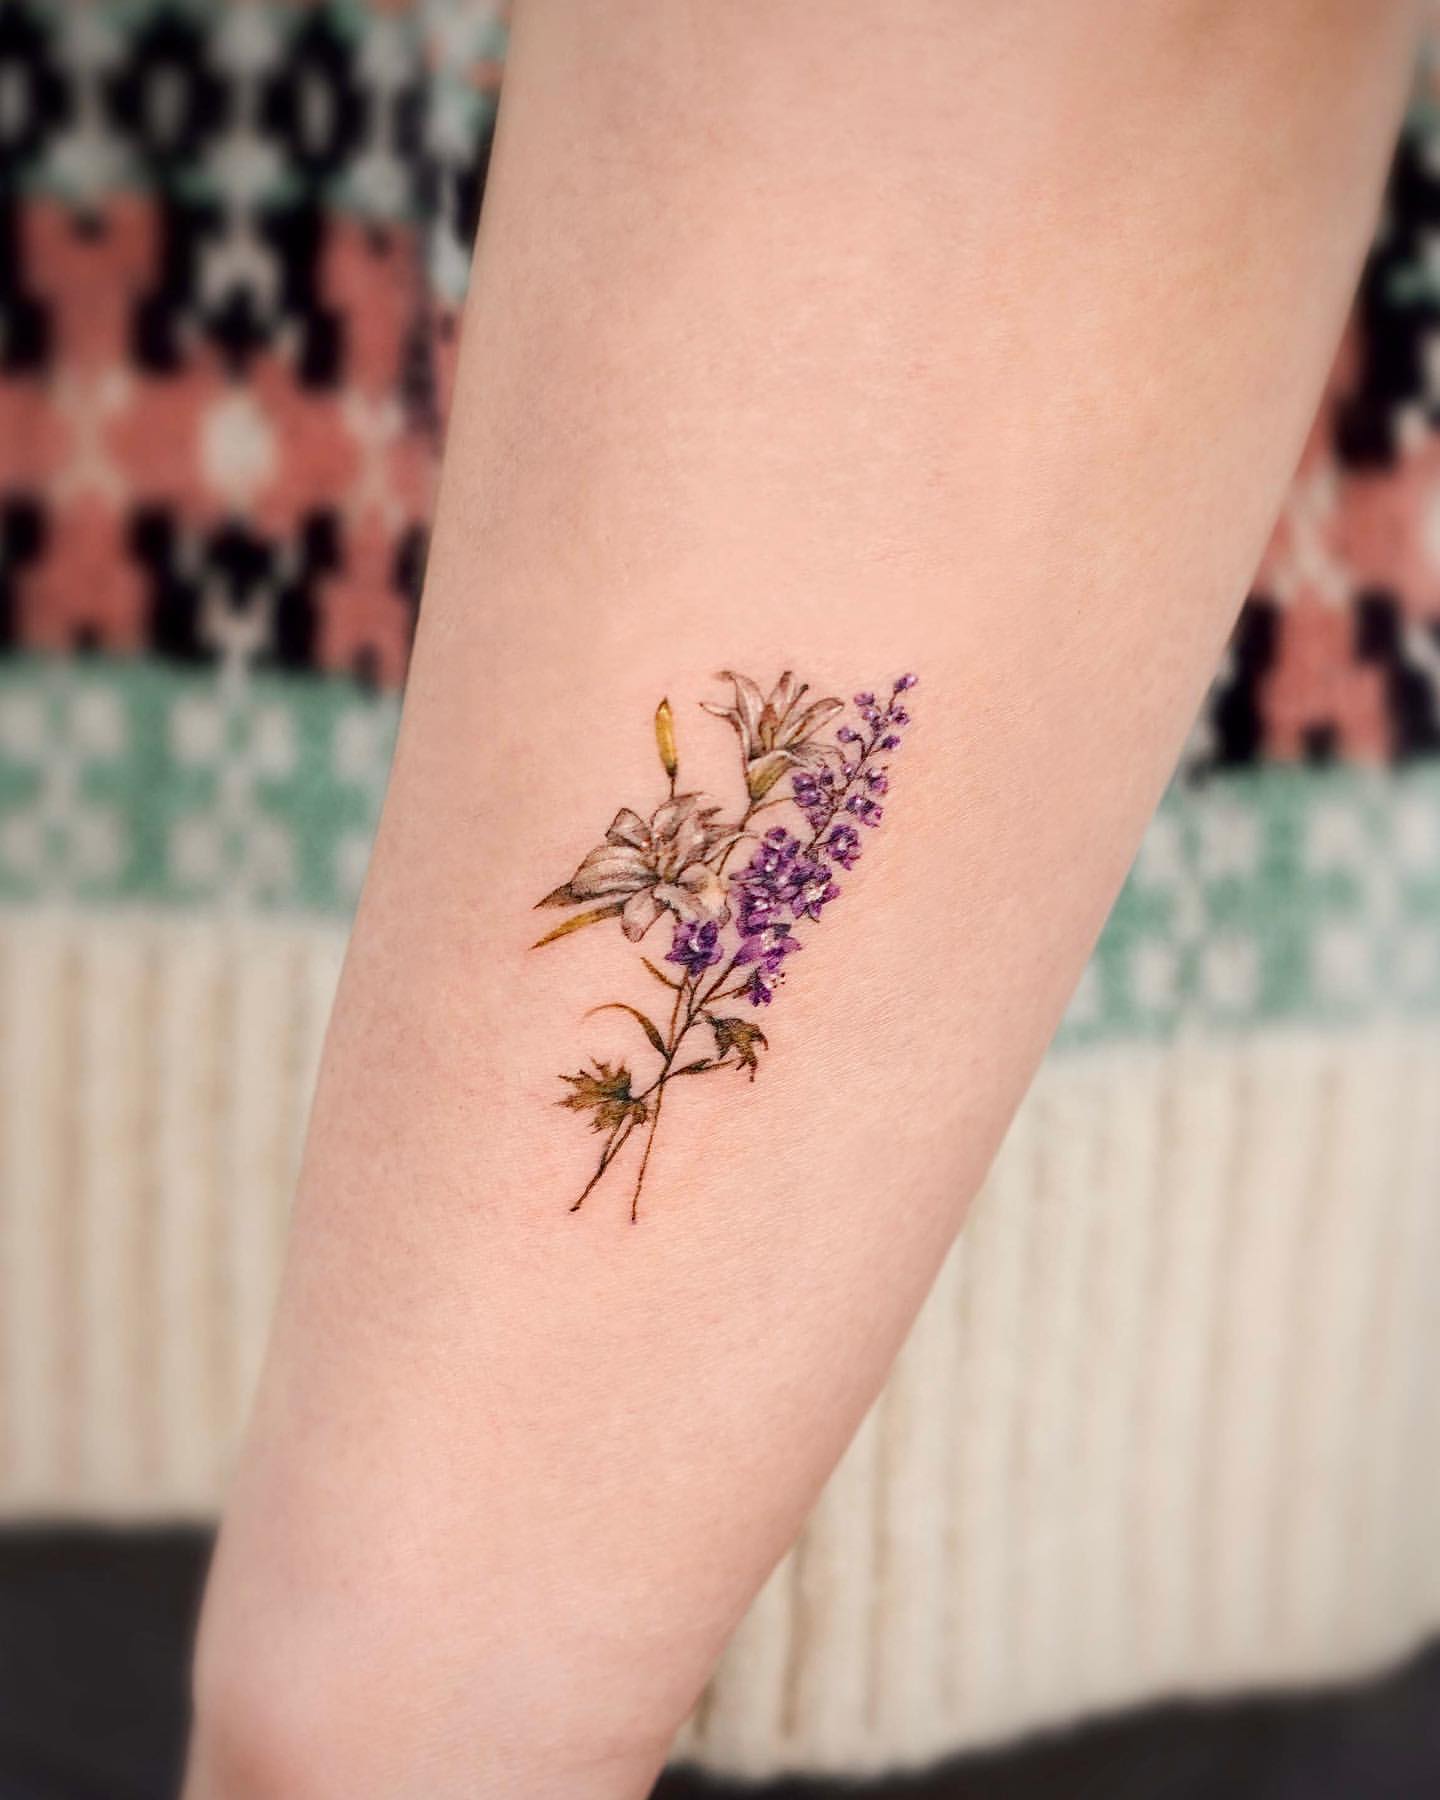 20 Small & Feminine Sprig Tattoos to Inspire You | CafeMom.com